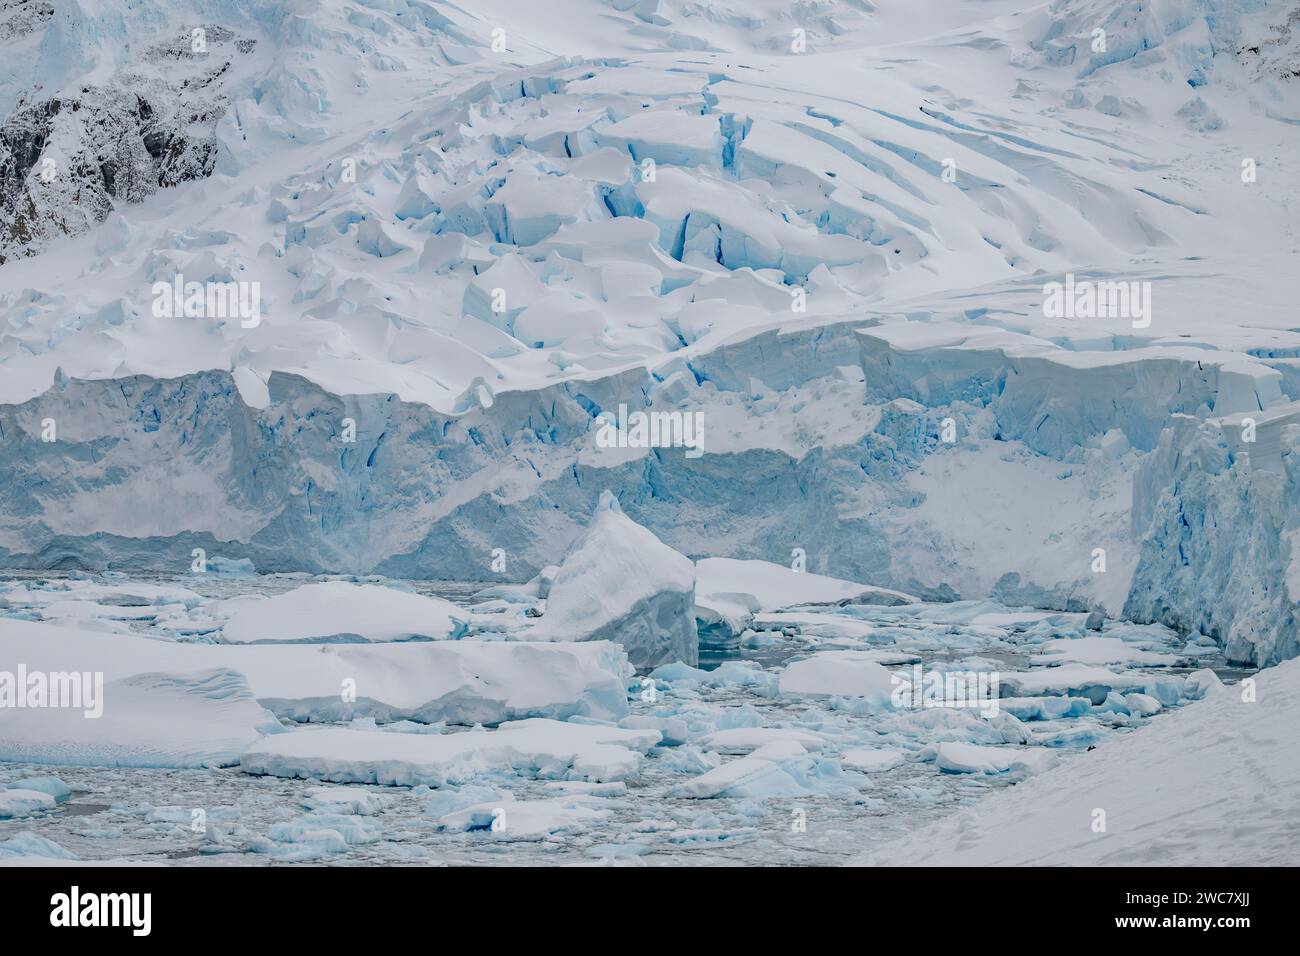 Neko Harbor, Antártida, agua llena de hielo, icebergs, glaciares que parcen más hielo, colonia de cría de pingüinos Gentoo, rodeado de picos nevados Foto de stock